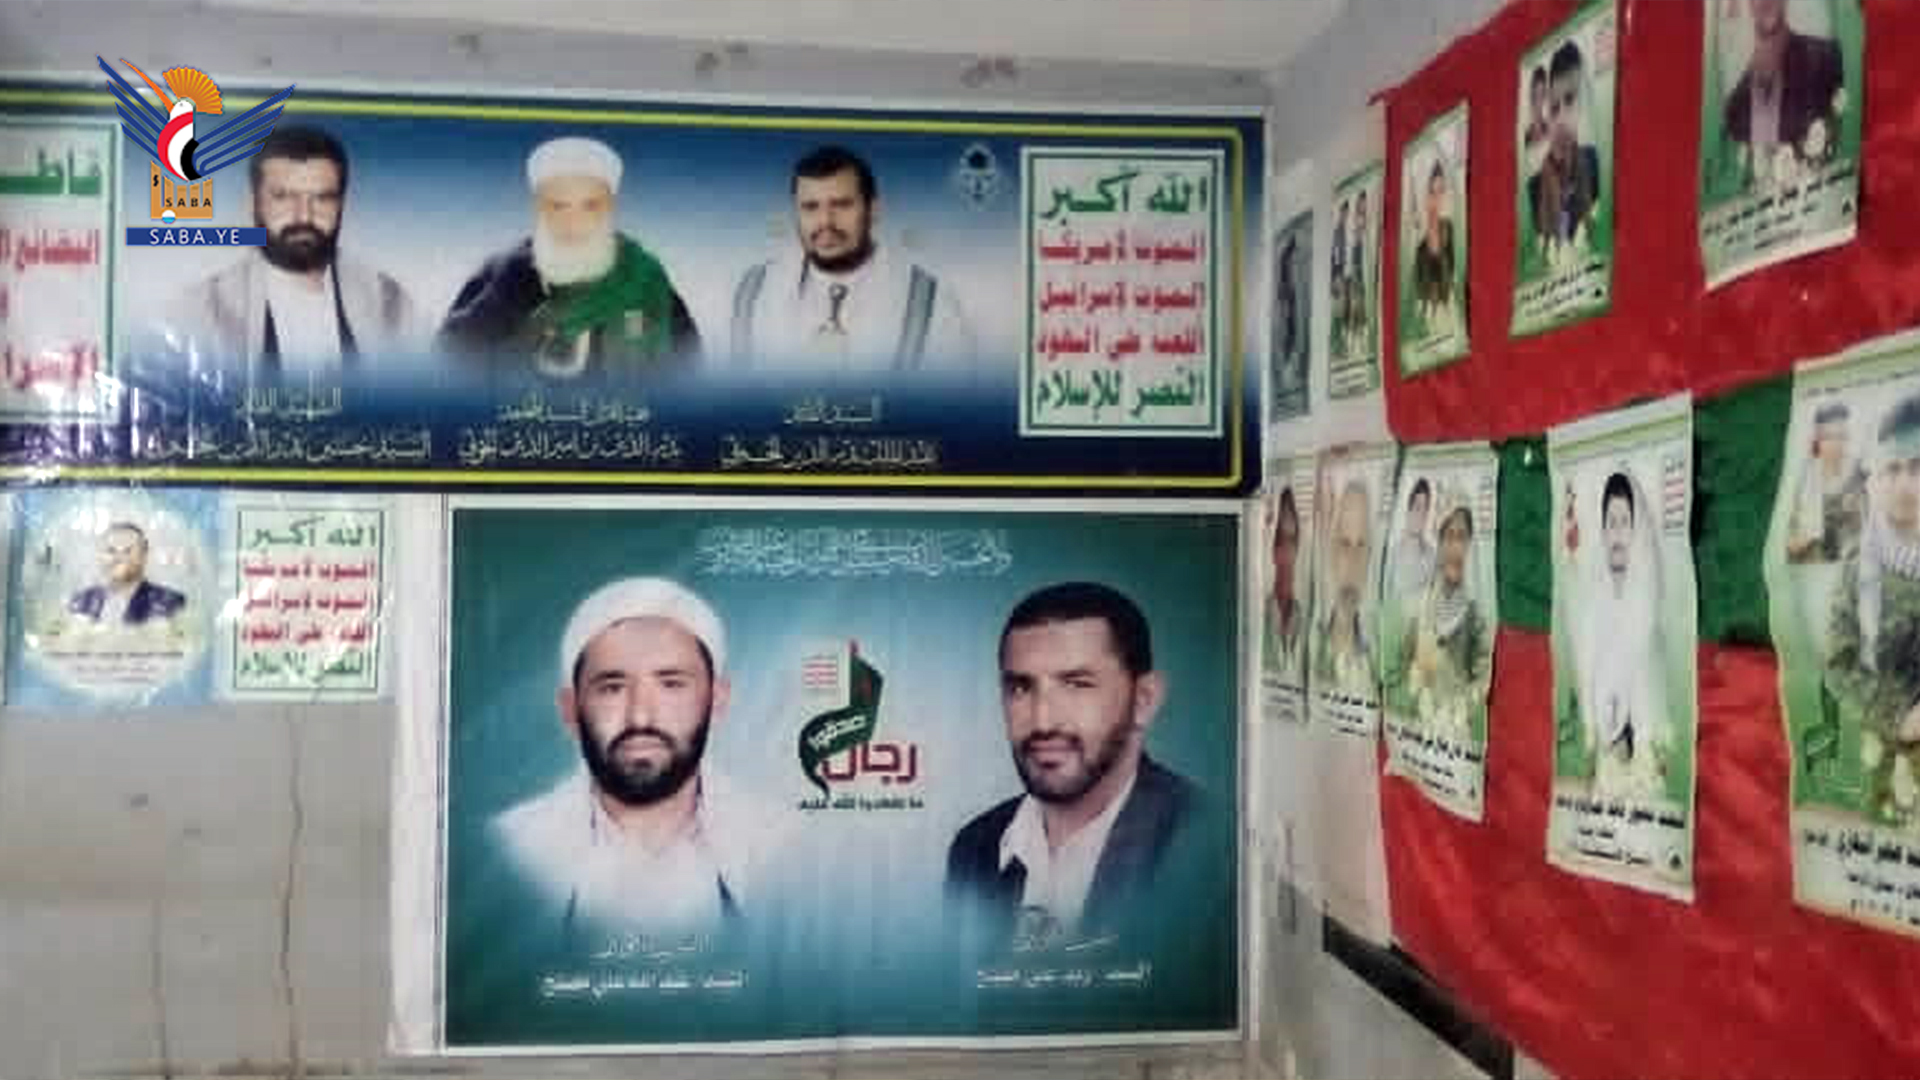 L'ouverture de l'exposition des martyrs dans le district de Saafan dans le gouvernorat de Sanaa